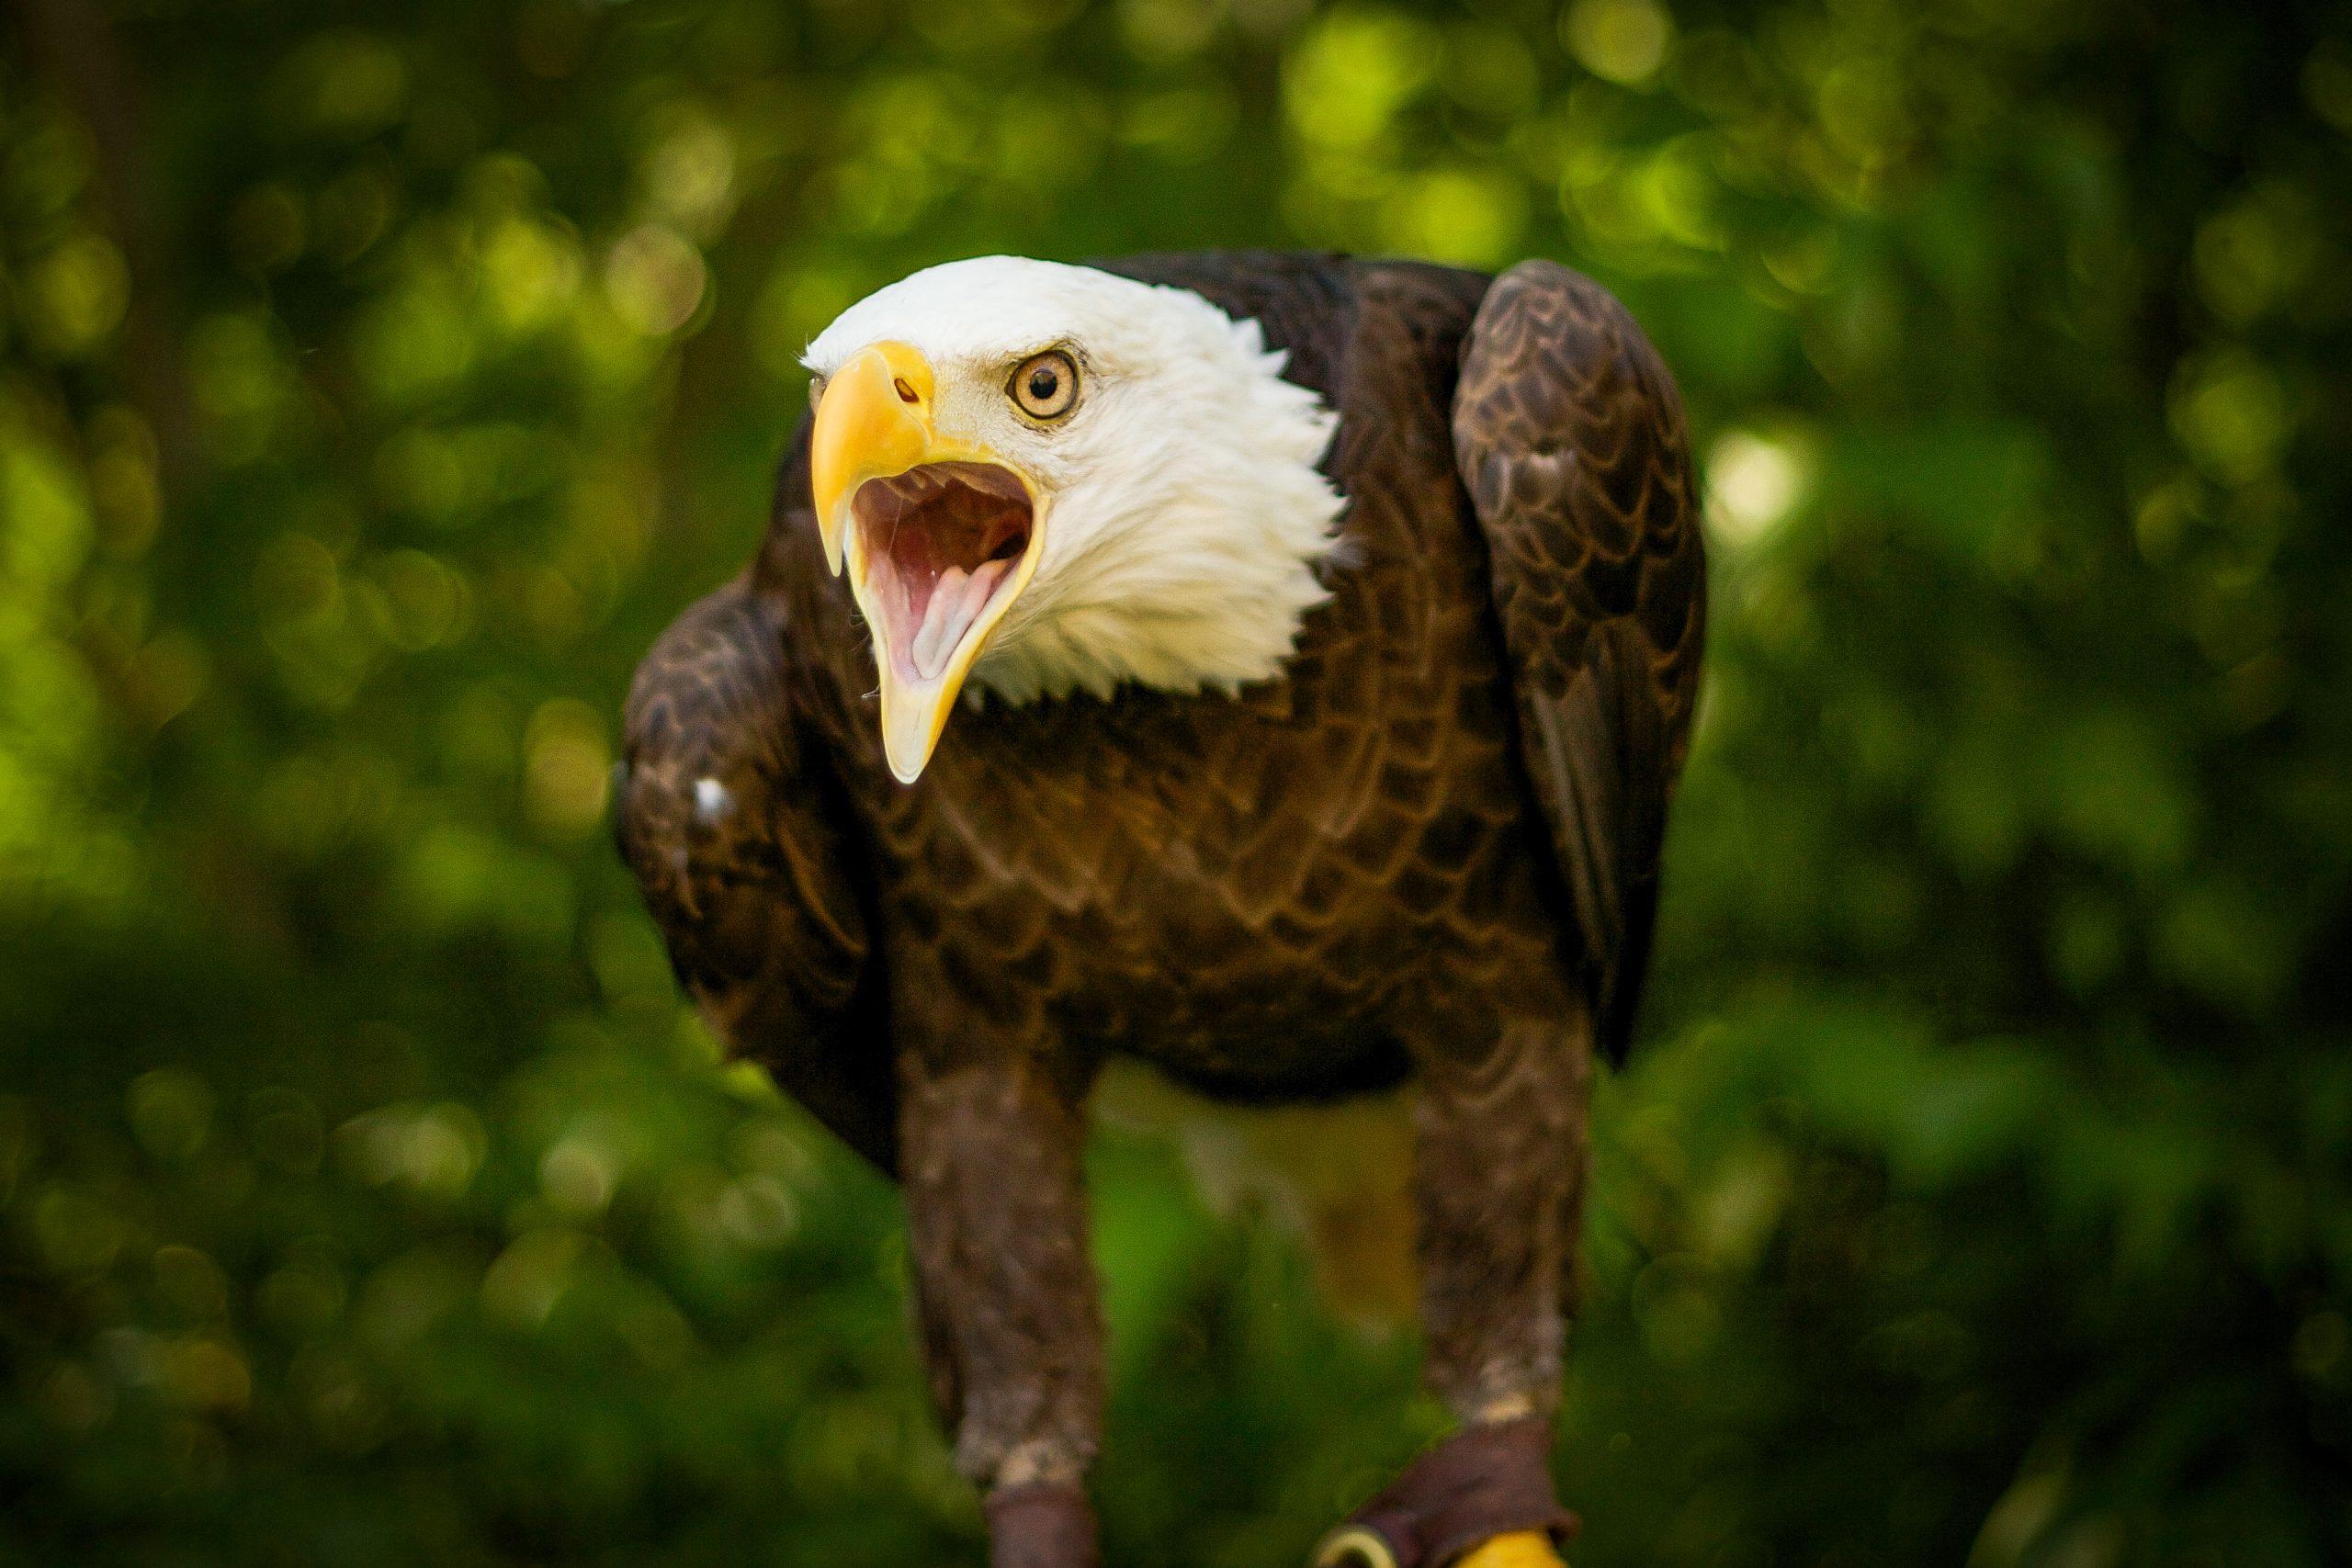 american bald eagle bird